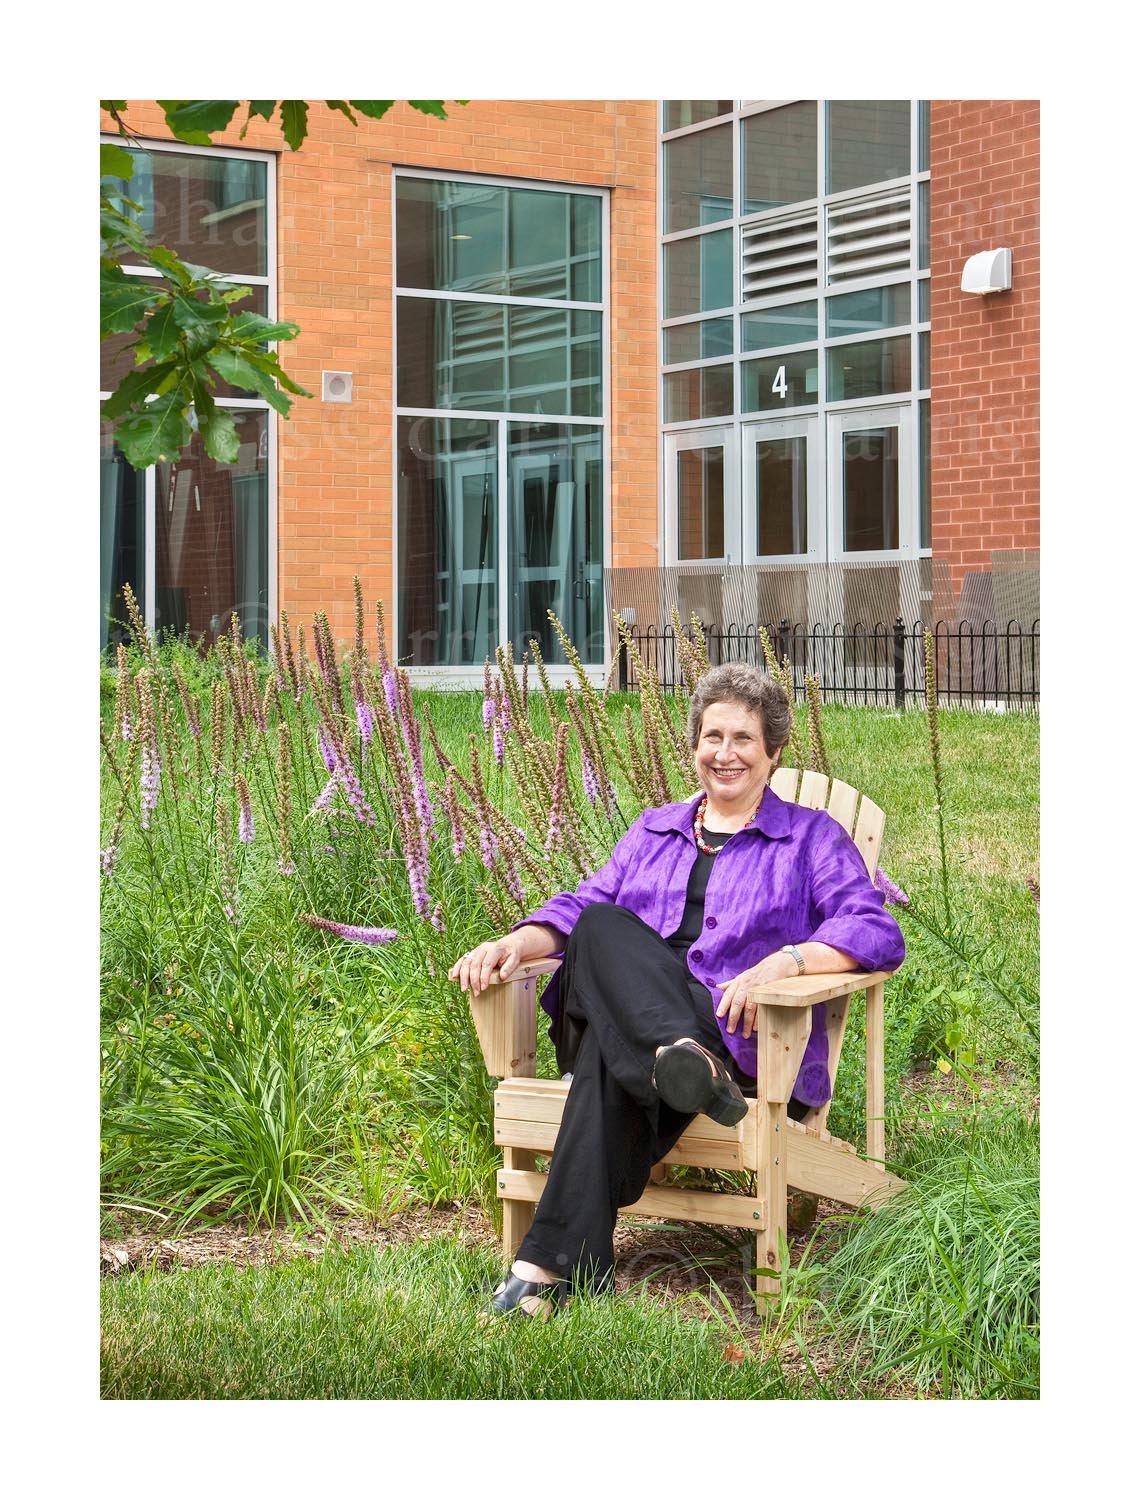  Helen Kessler, Green Technologies Consultant, at the Skinner Elementary School in Chicago. 